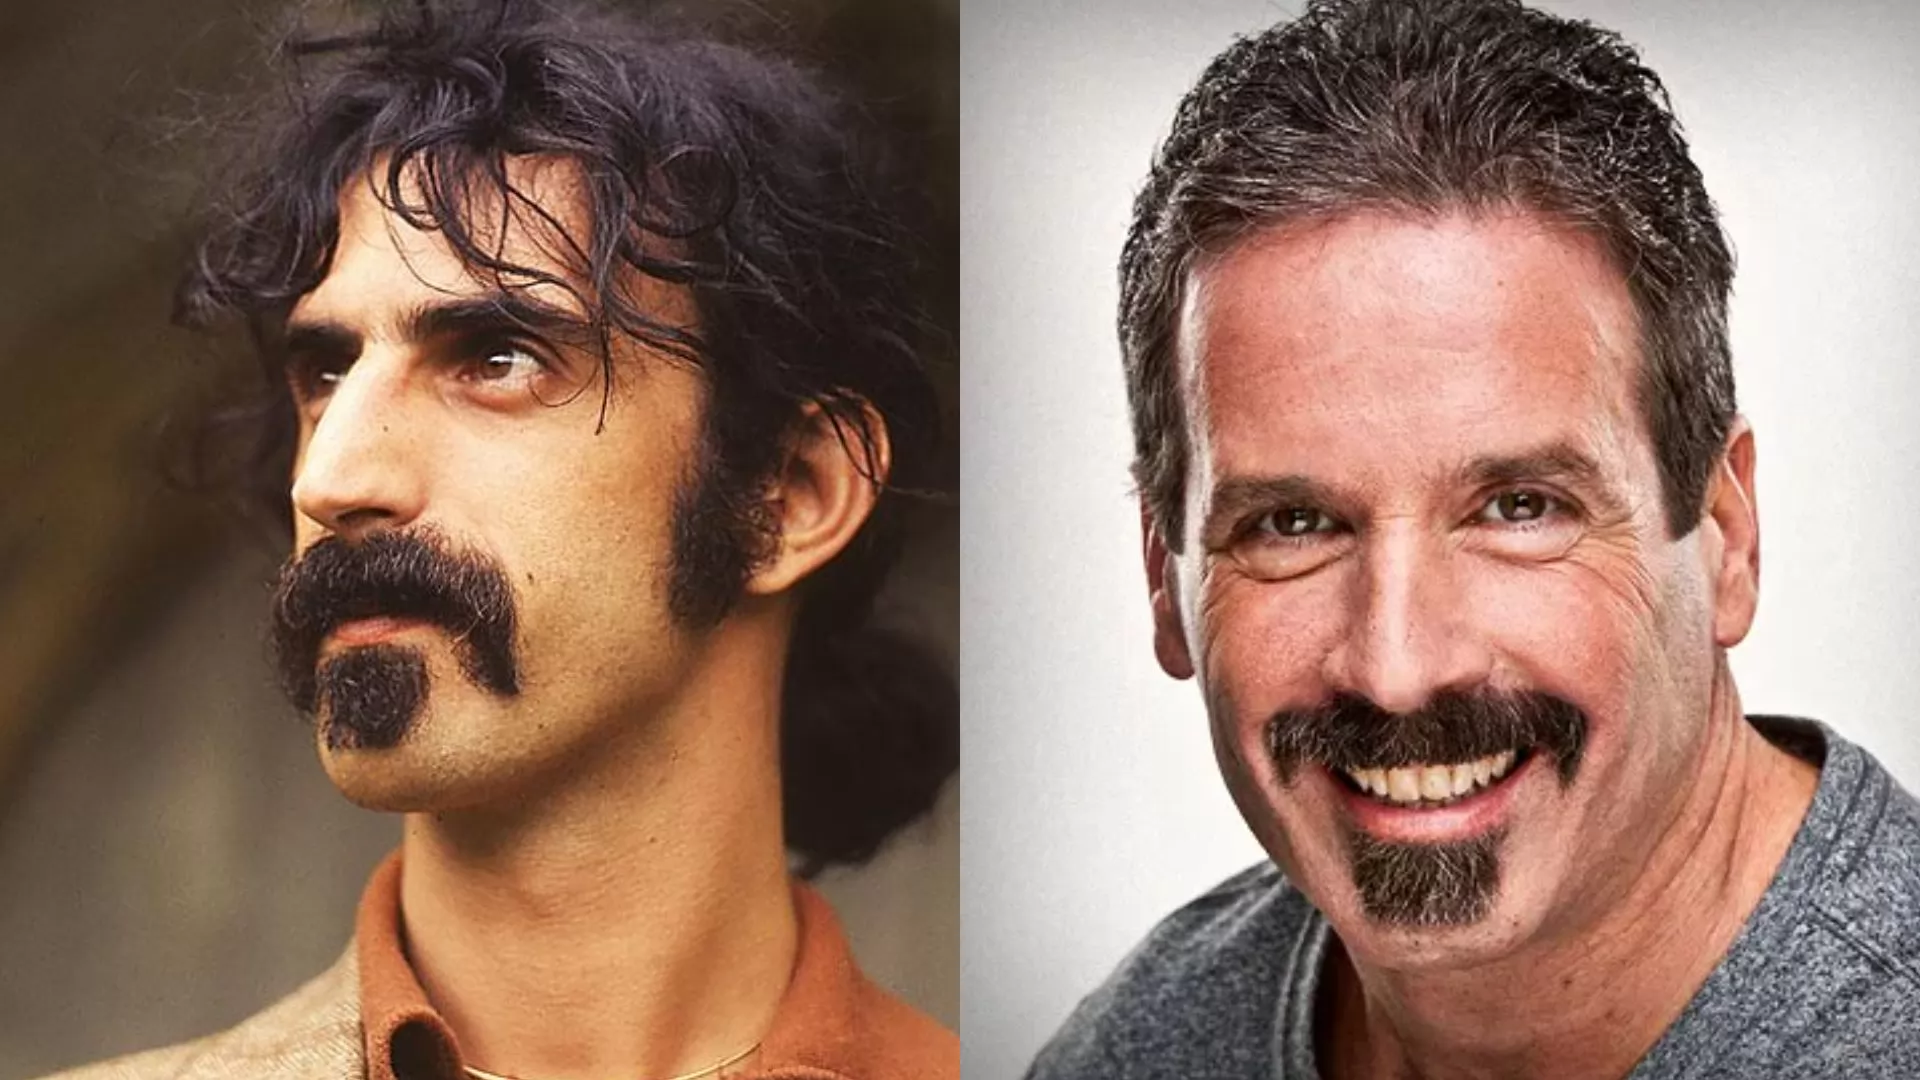  Zappa